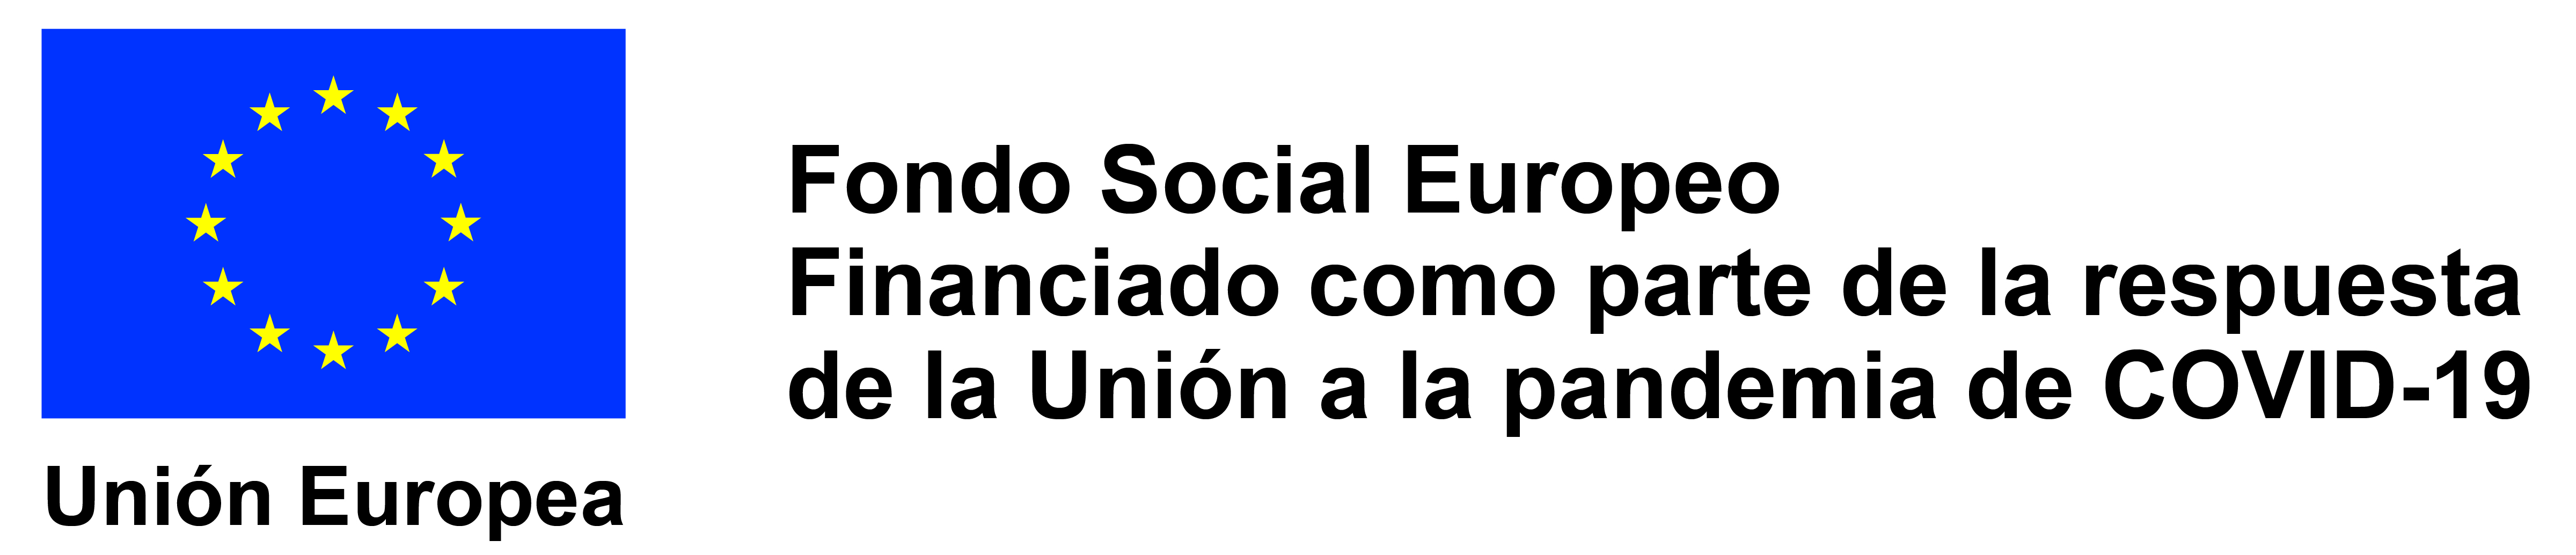 LOGO UNION EUROPEA. FONDO SOCIAL EUROPEO